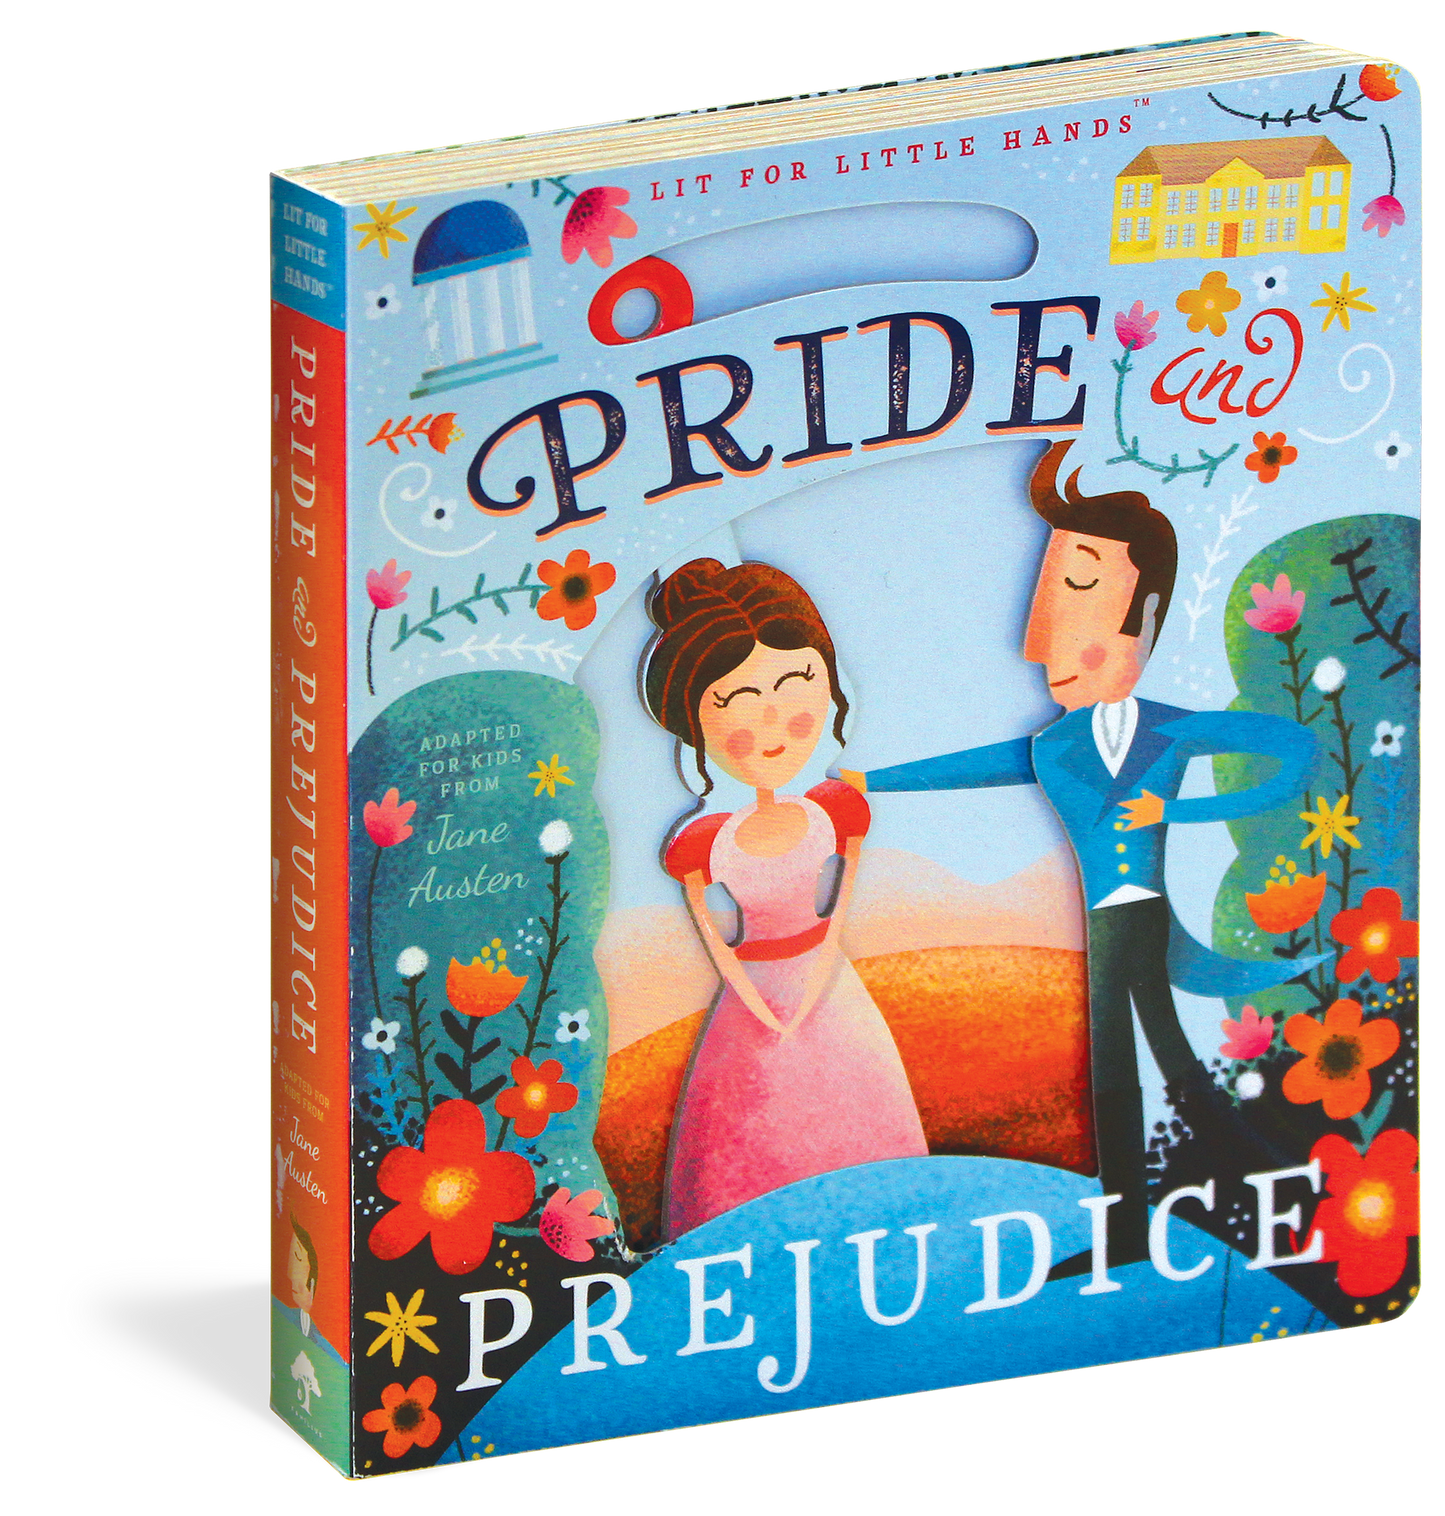 Lit for Little Hands: Pride and Prejudice